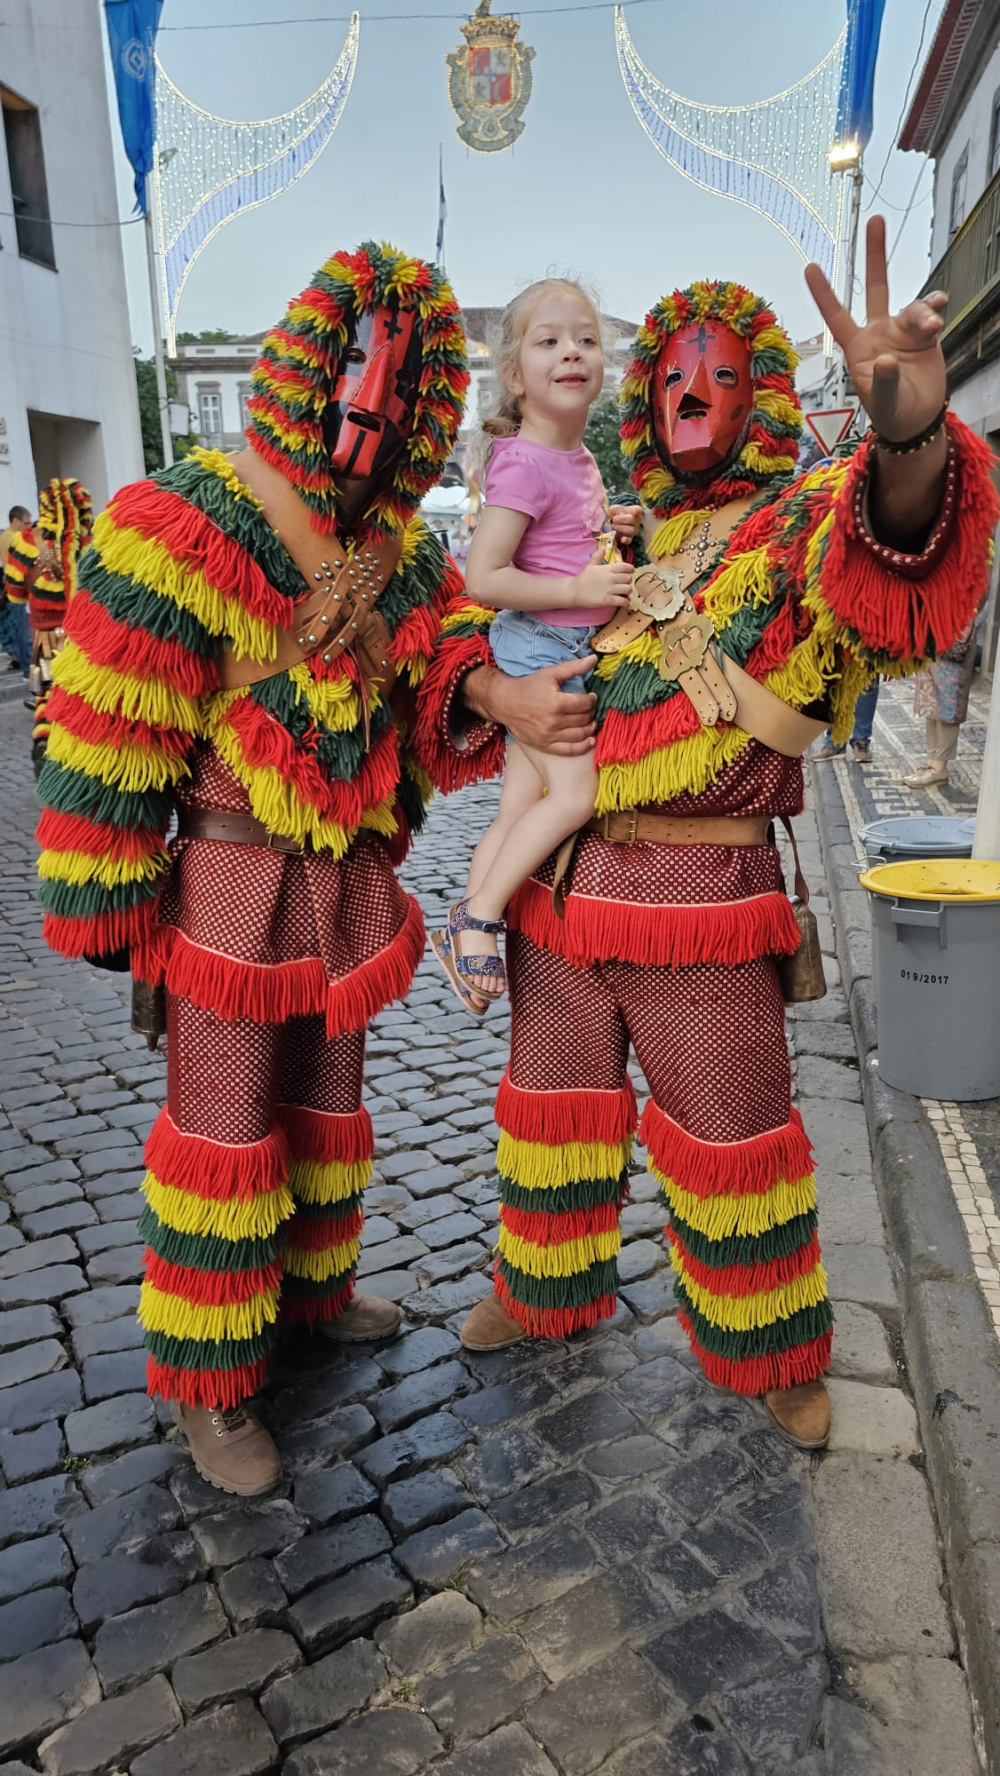 Caretos de Podence participam nas Festas SanJoaninas da ilha Terceira